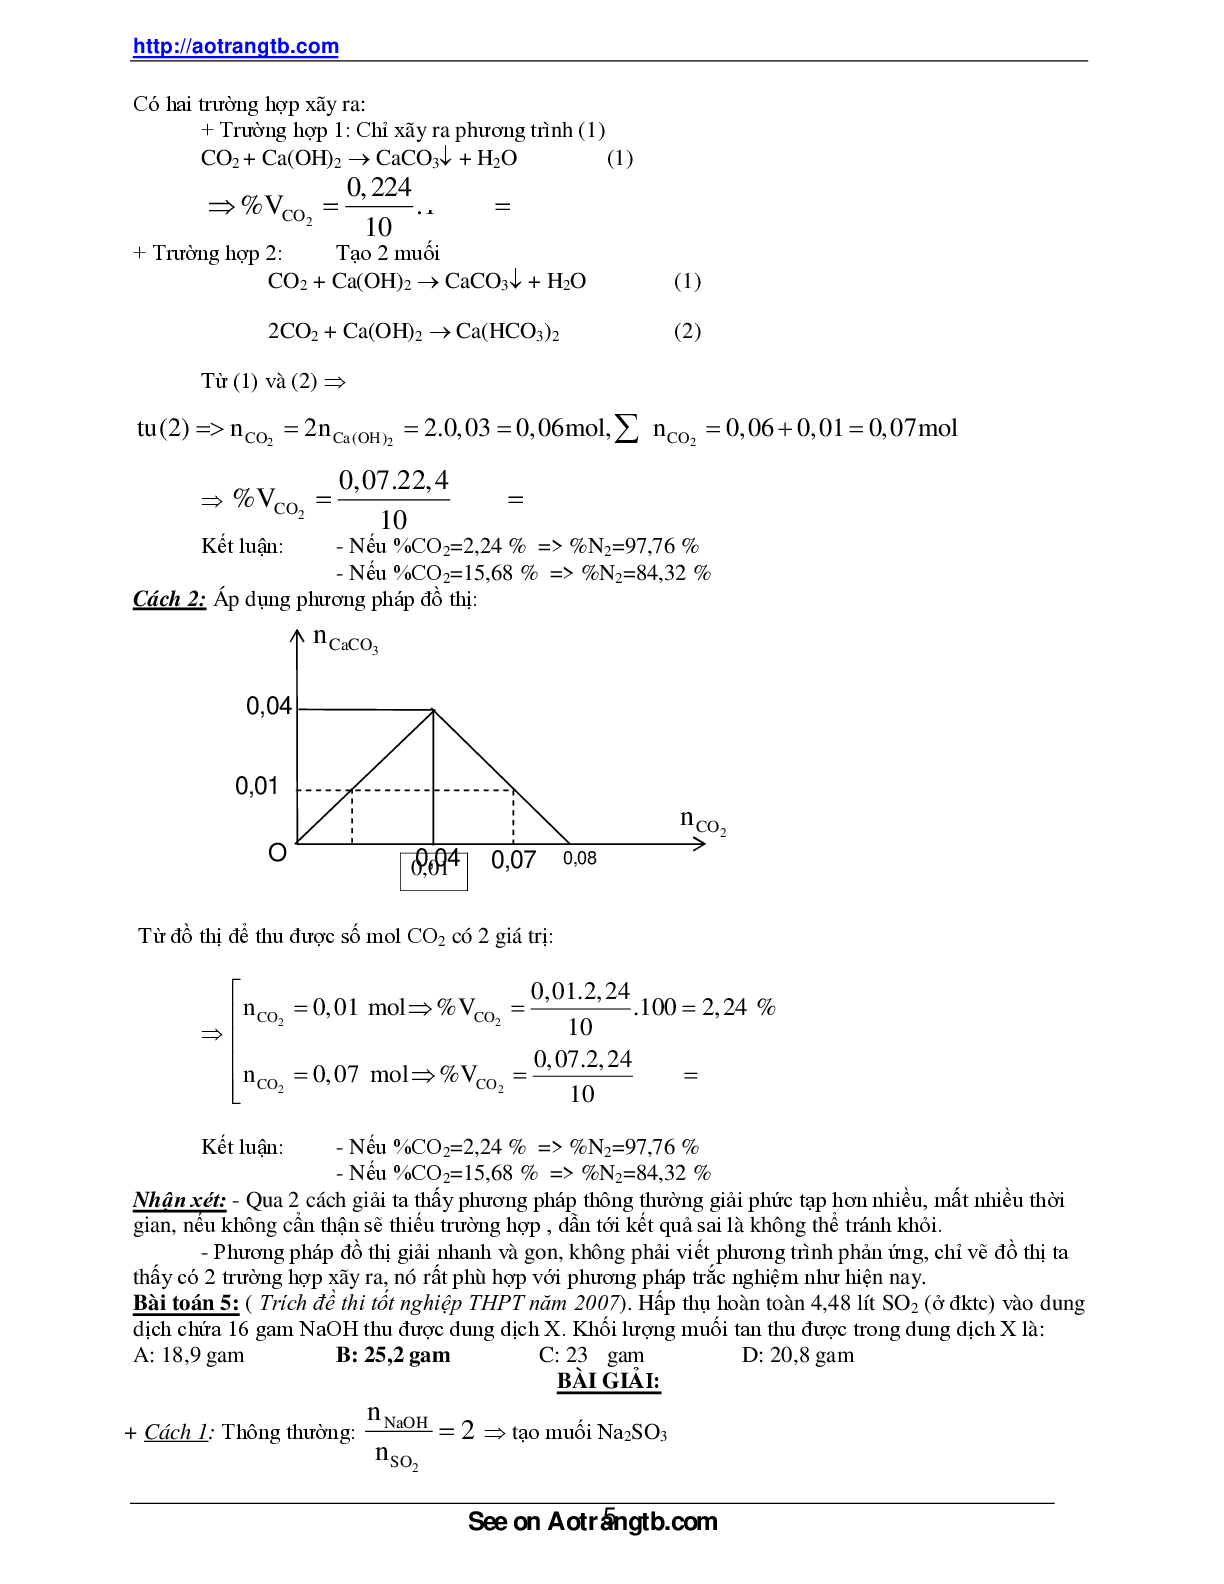 Bài tập về ứng dụng phương pháp đồ thị trong giải toán hóa học (trang 5)